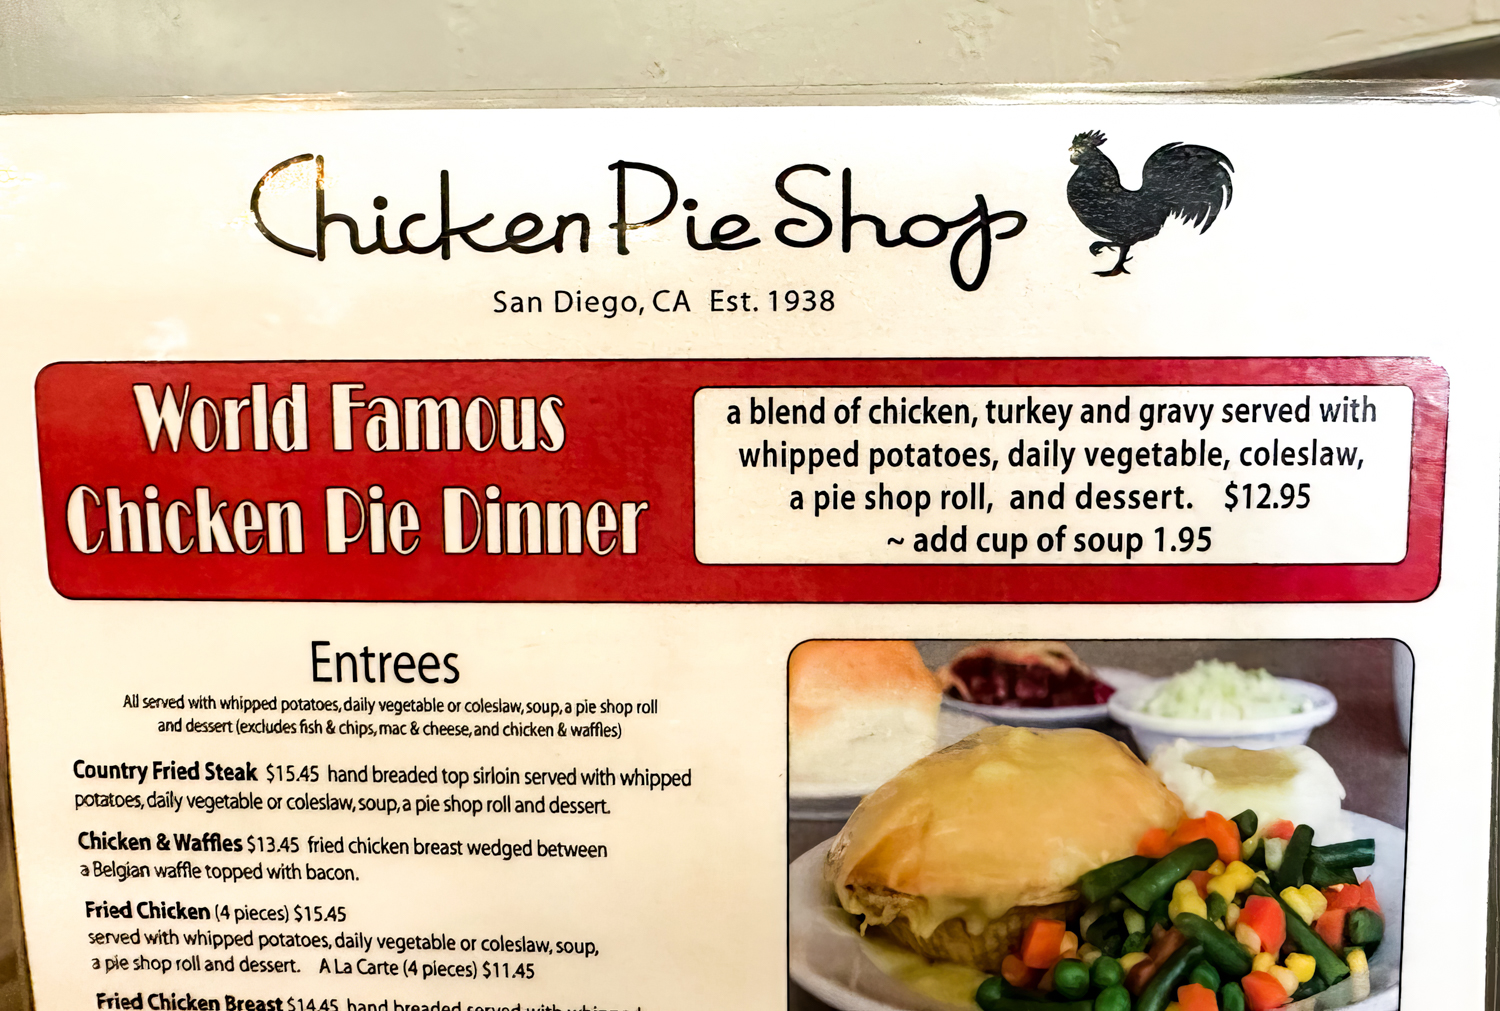 San Diego’s Chicken Pie Shop 